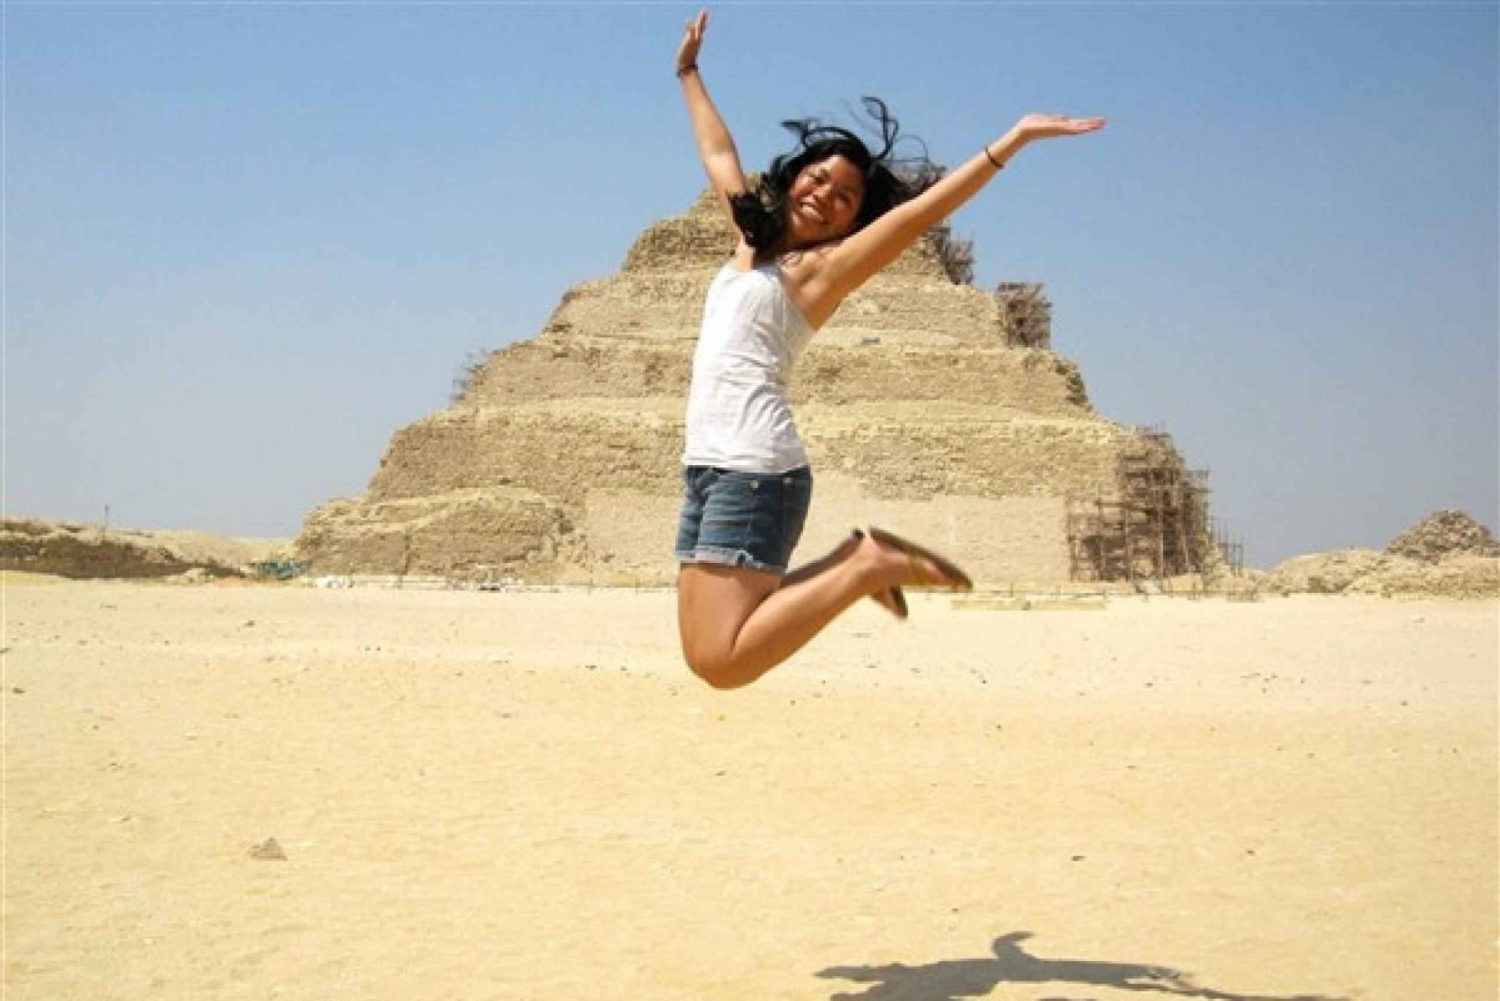 Cairo: Pyramiderne, Sakkara & Memphis Privat tur med frokost